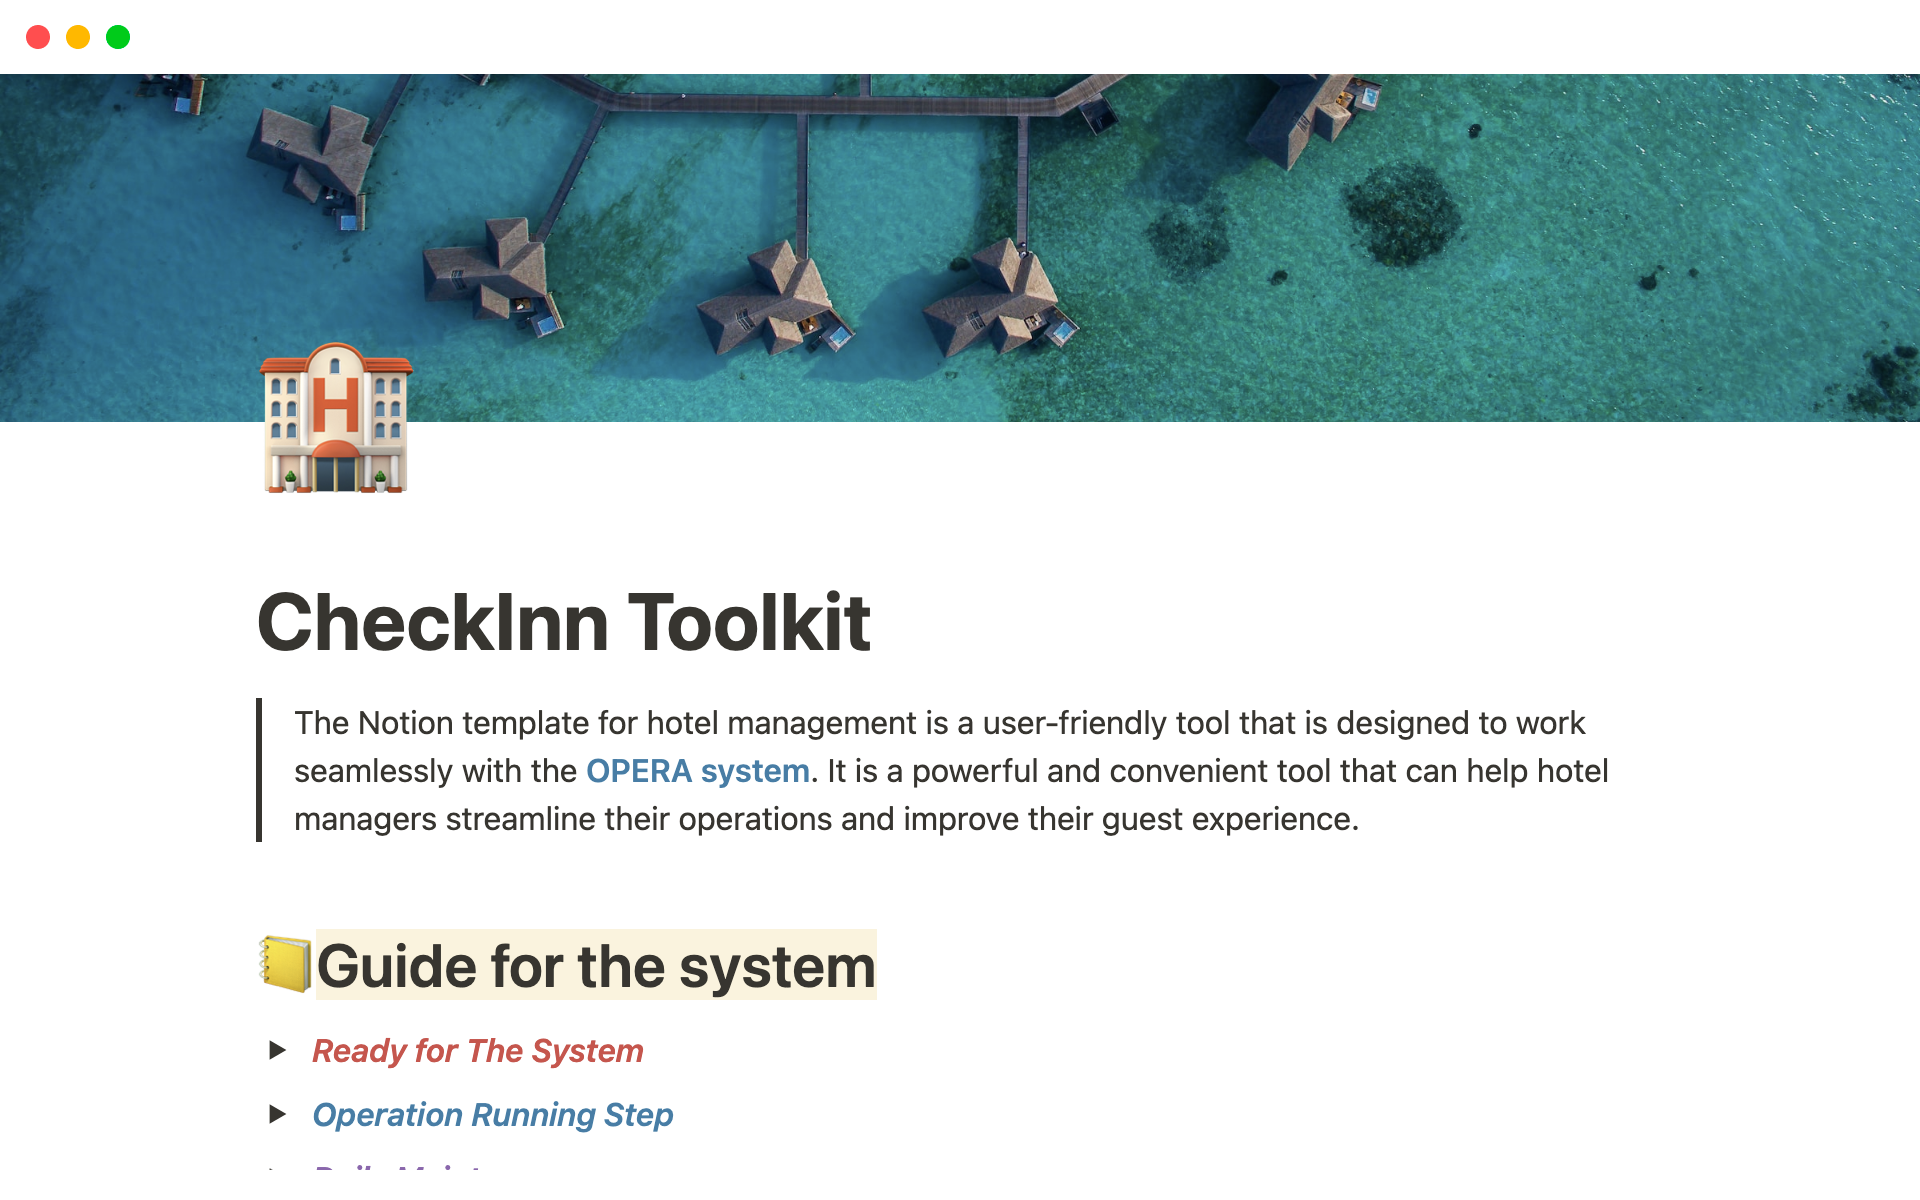 Uma prévia do modelo para CheckInn Toolkit